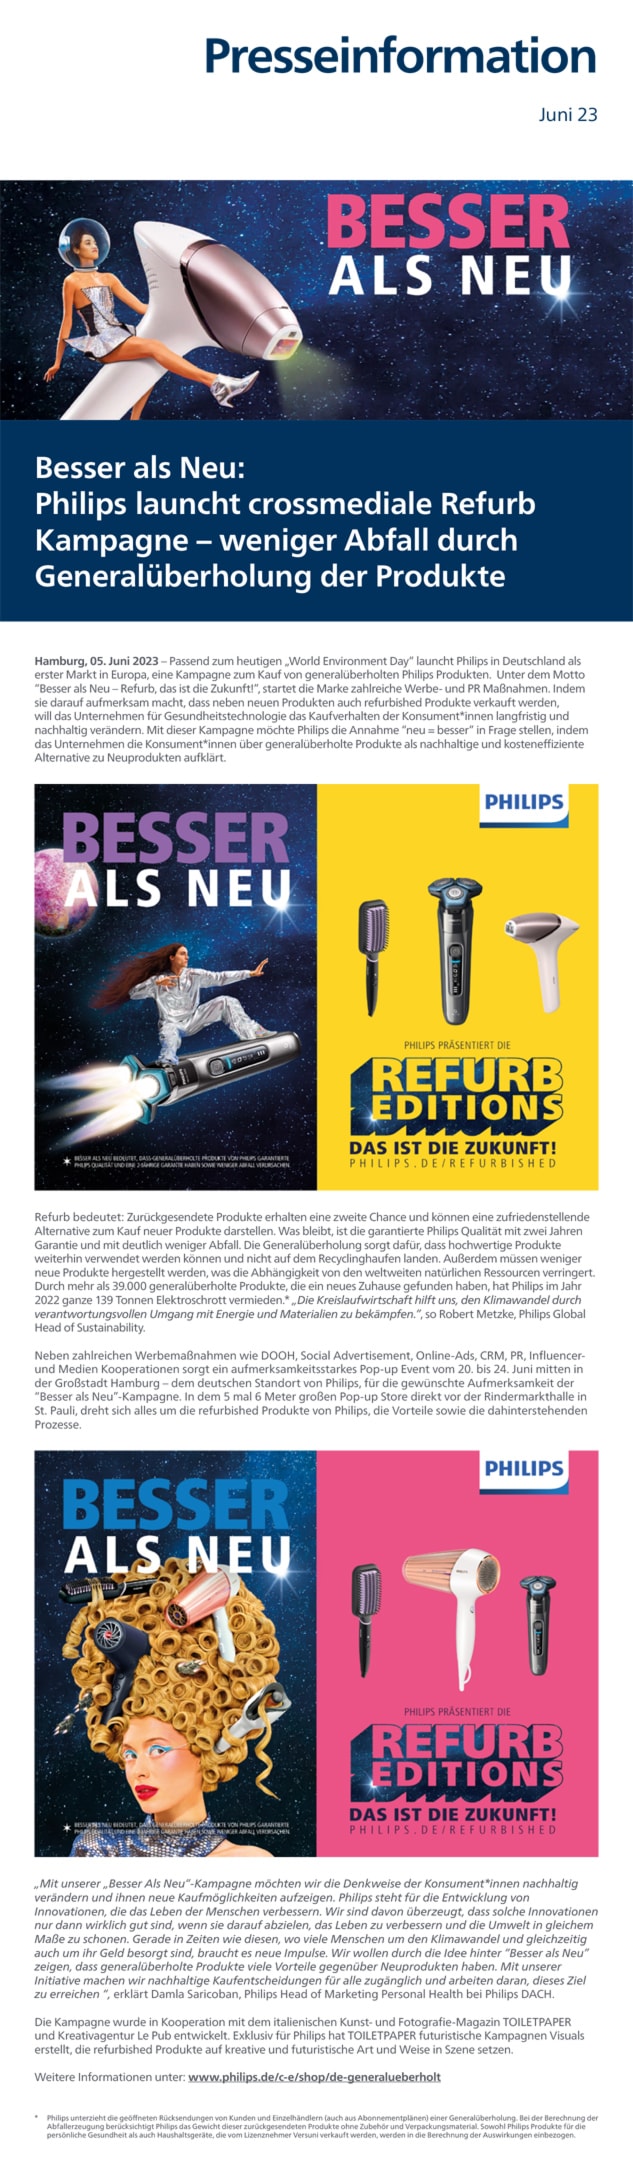 Philips Besser als Neu refurb Kampagne